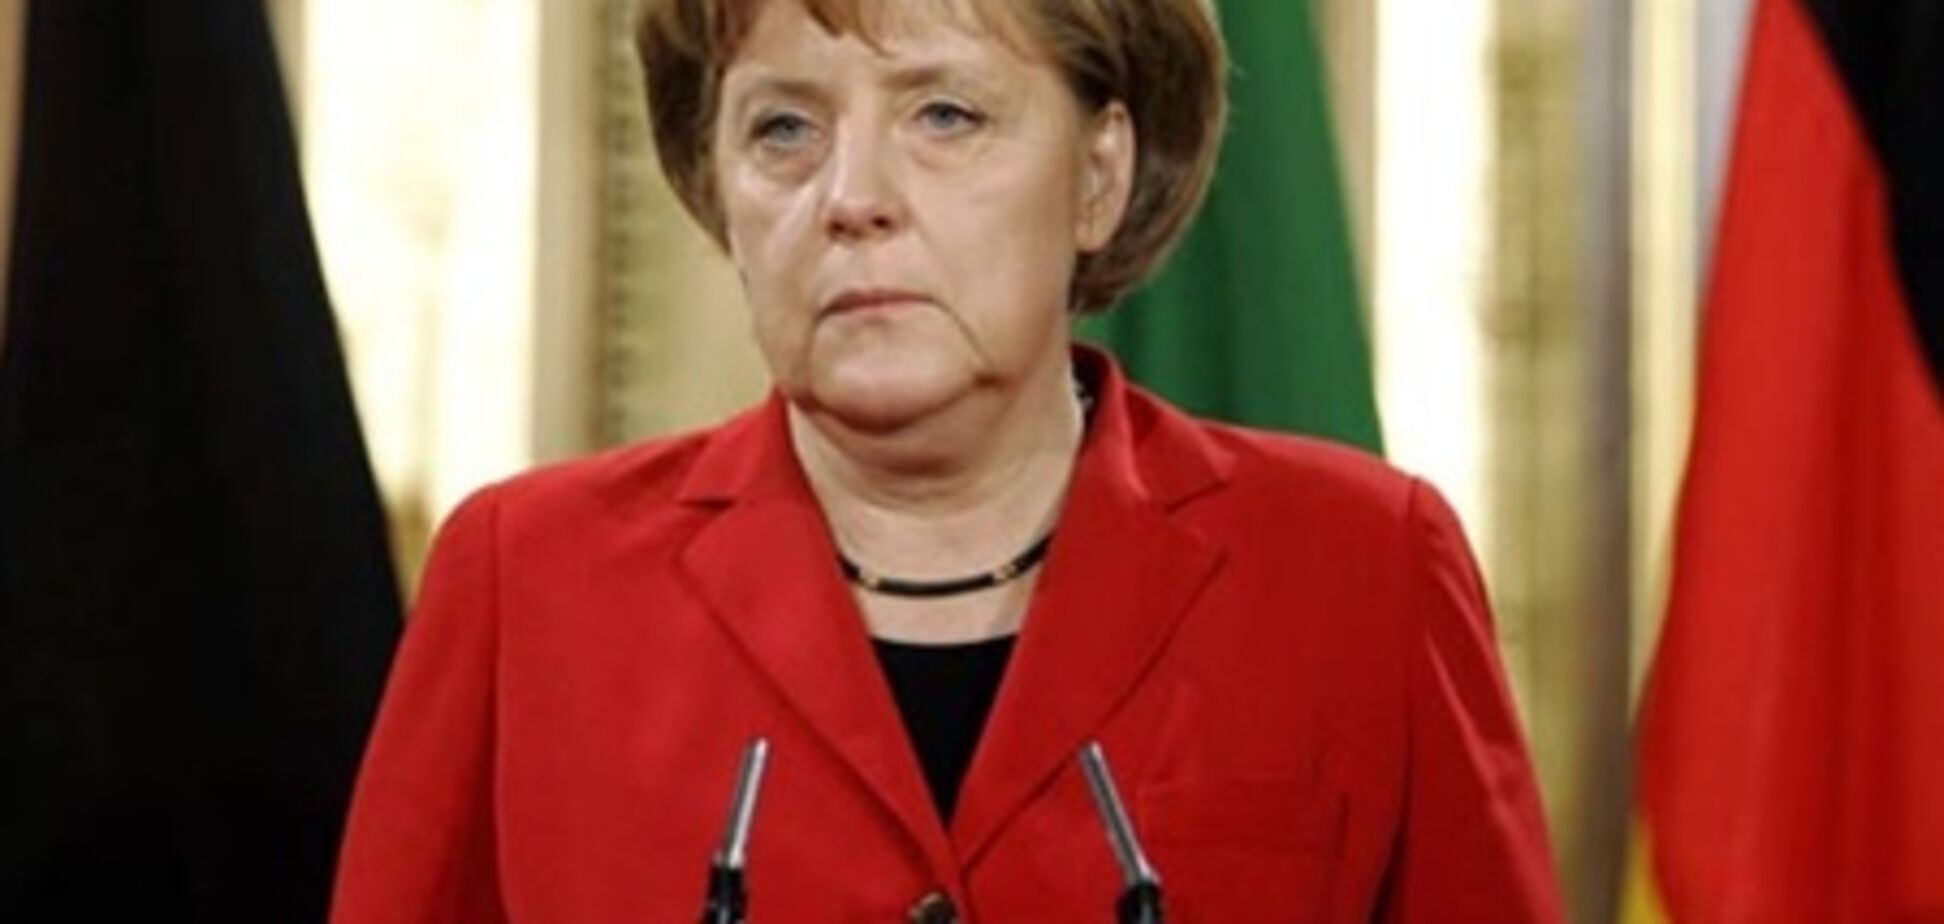 Германия откажется от АЭС и станет новатором в альтернативной энергетике - Меркель